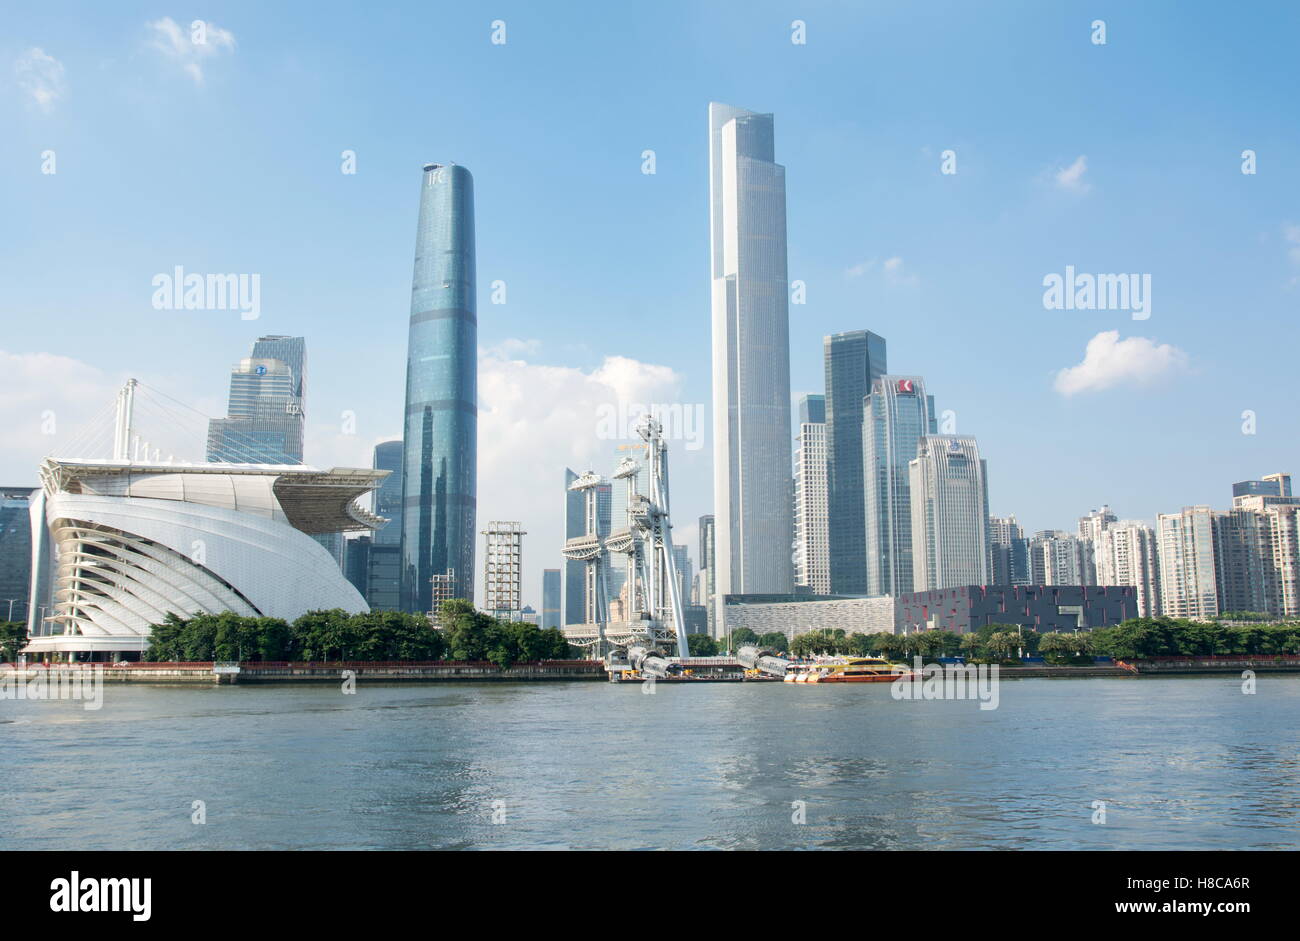 GUANGZHOU, CHINA - Sep 13, 2016: el paisaje urbano de agua de la ciudad de Guangzhou, provincia de Guangdong, China Foto de stock